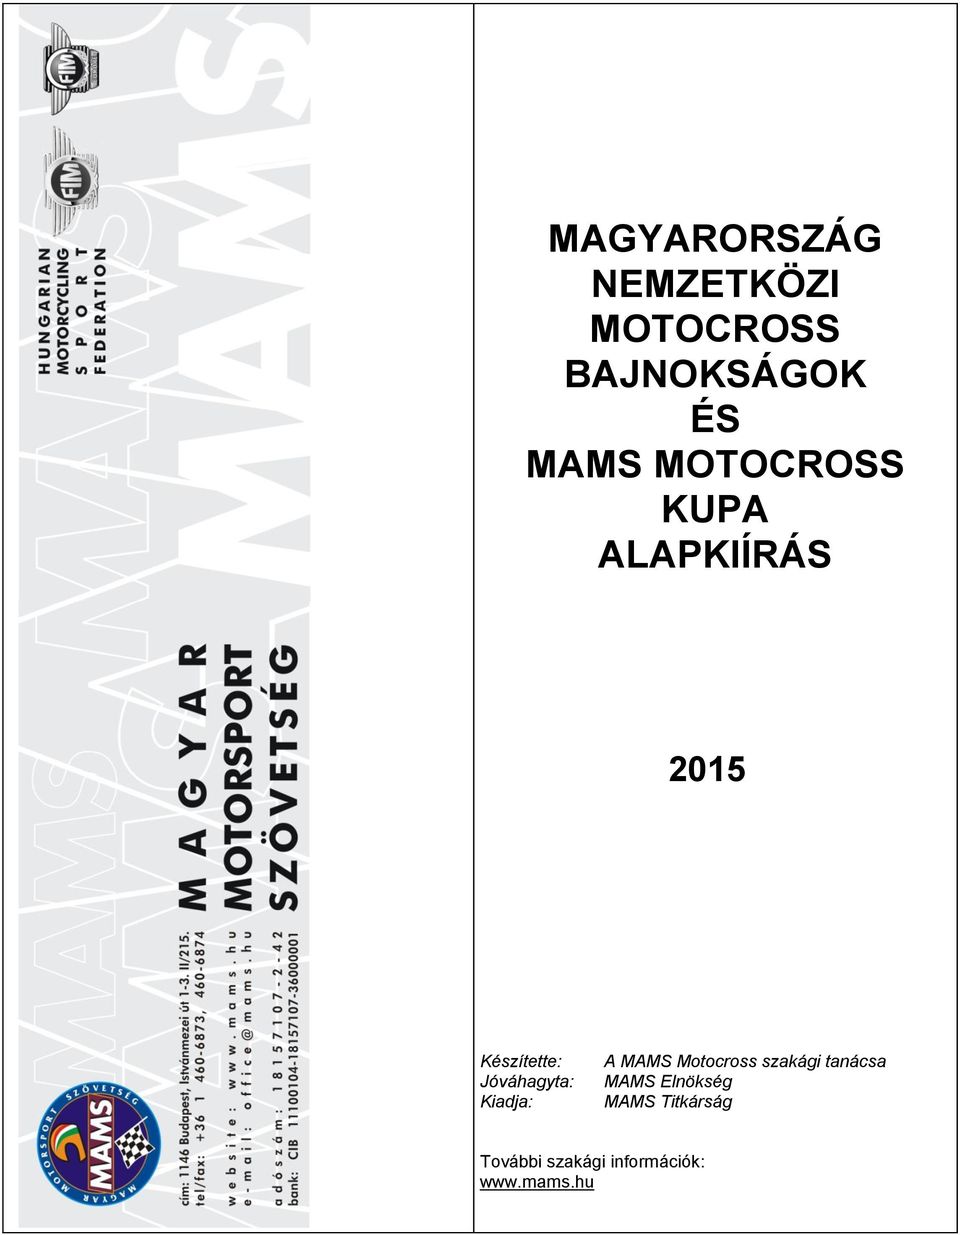 Kiadja: A MAMS Motocross szakági tanácsa MAMS Elnökség